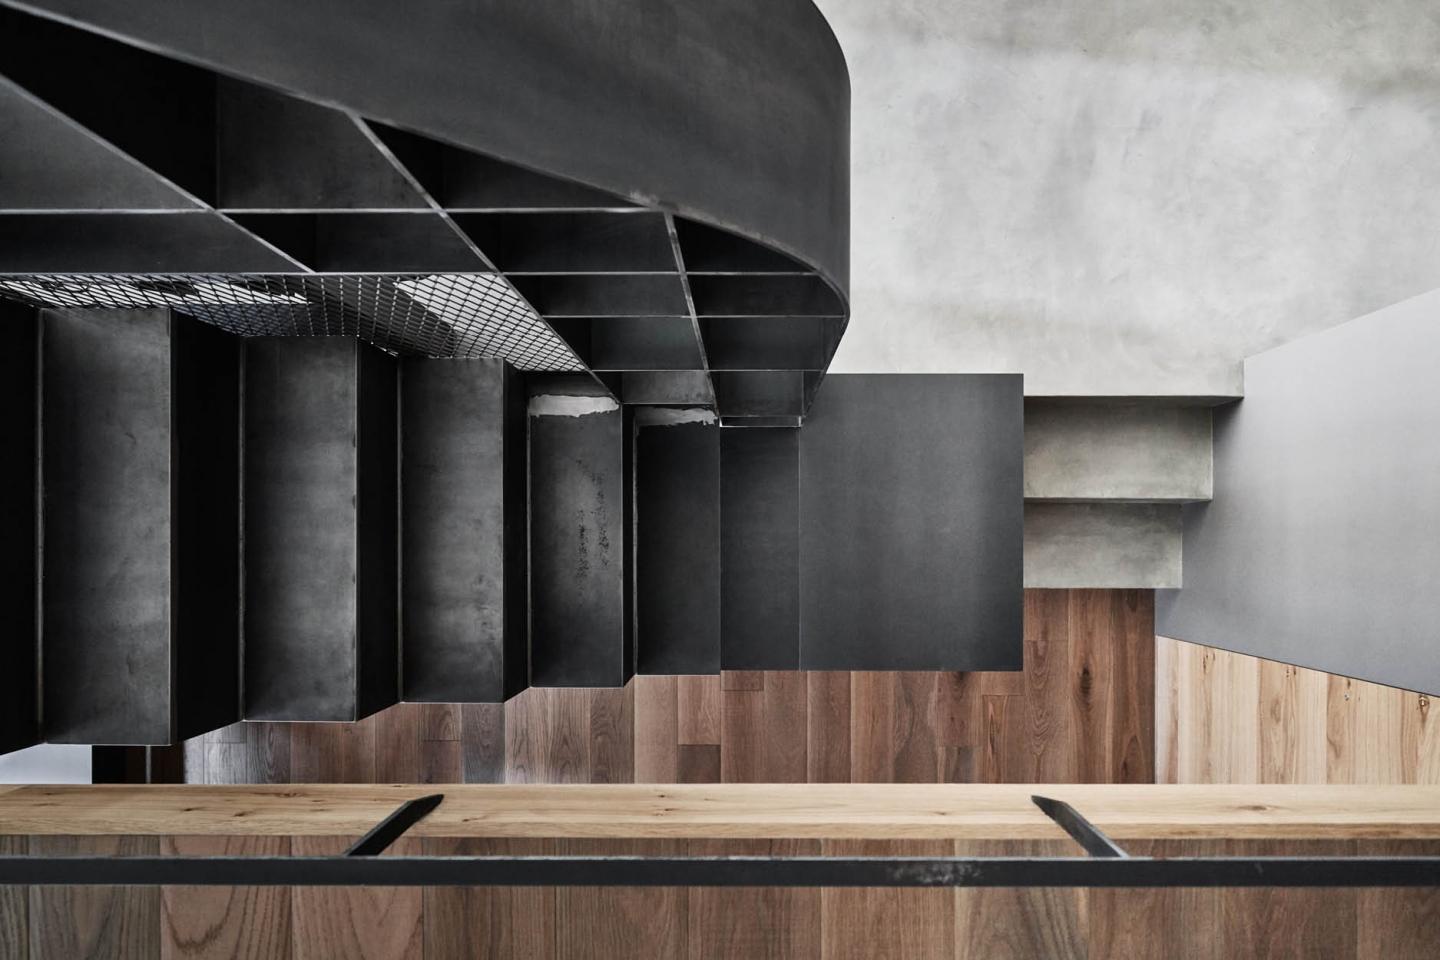 極具工業風美學的黑鋼梯設計